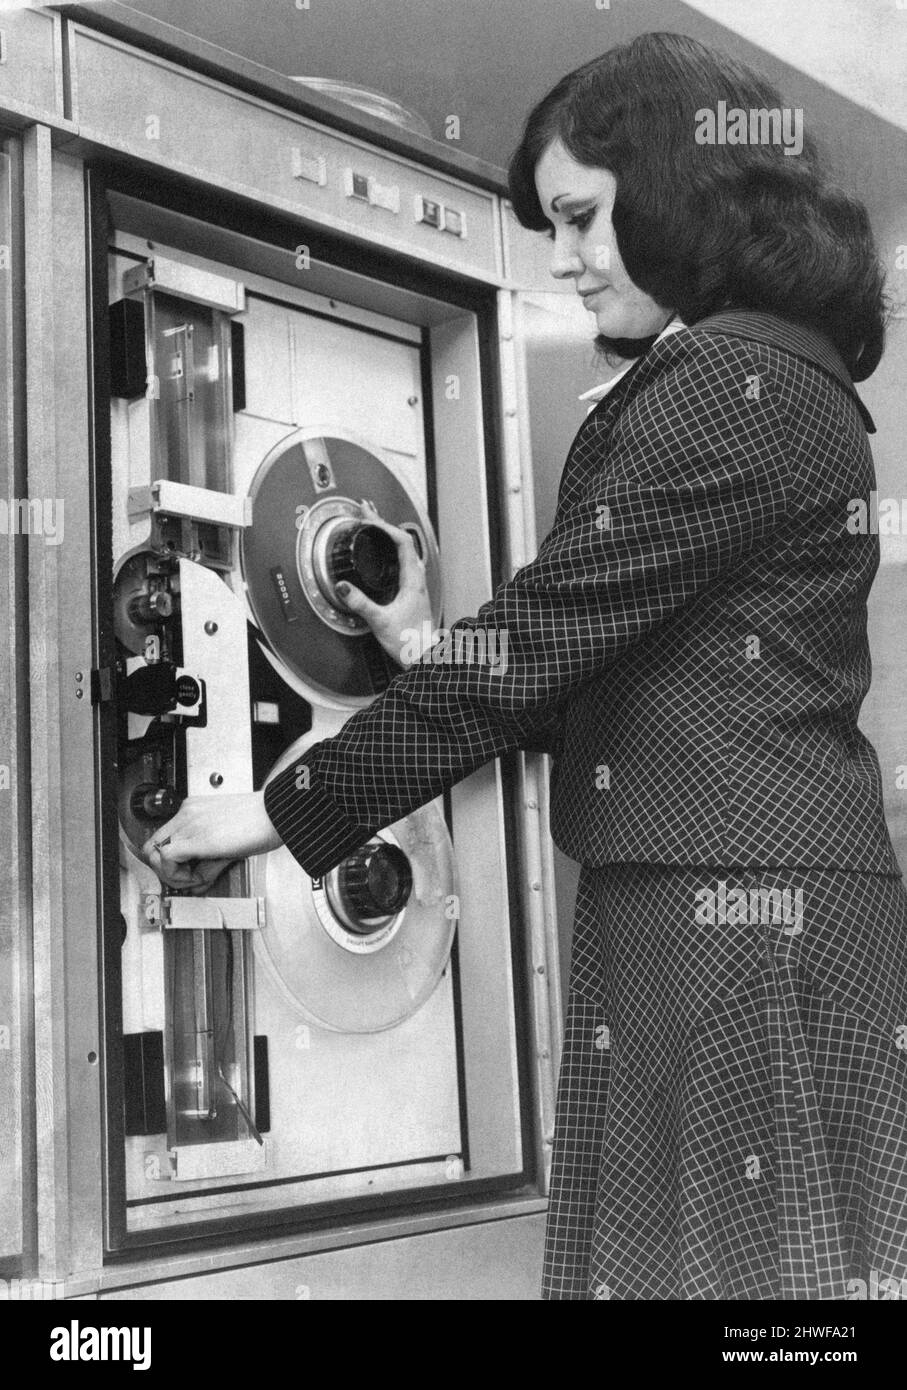 Computer Services Center Ltd, nuovo centro di Long Lane, Aintree, Liverpool, Circa 1970. Donna che inserisce il nastro magnetico. Foto Stock